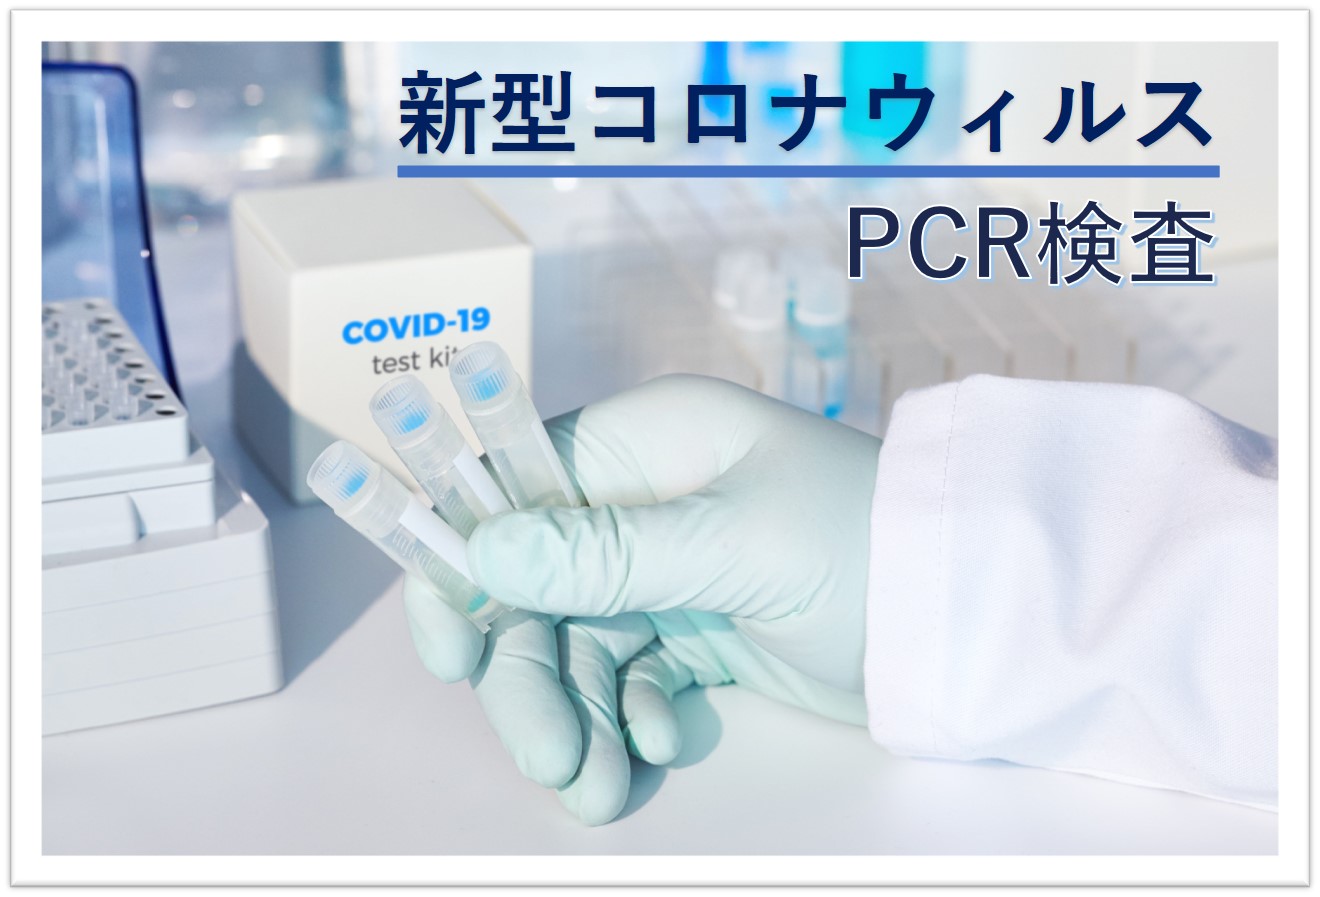 新型コロナウイルスPCR検査キットに新メニュー追加